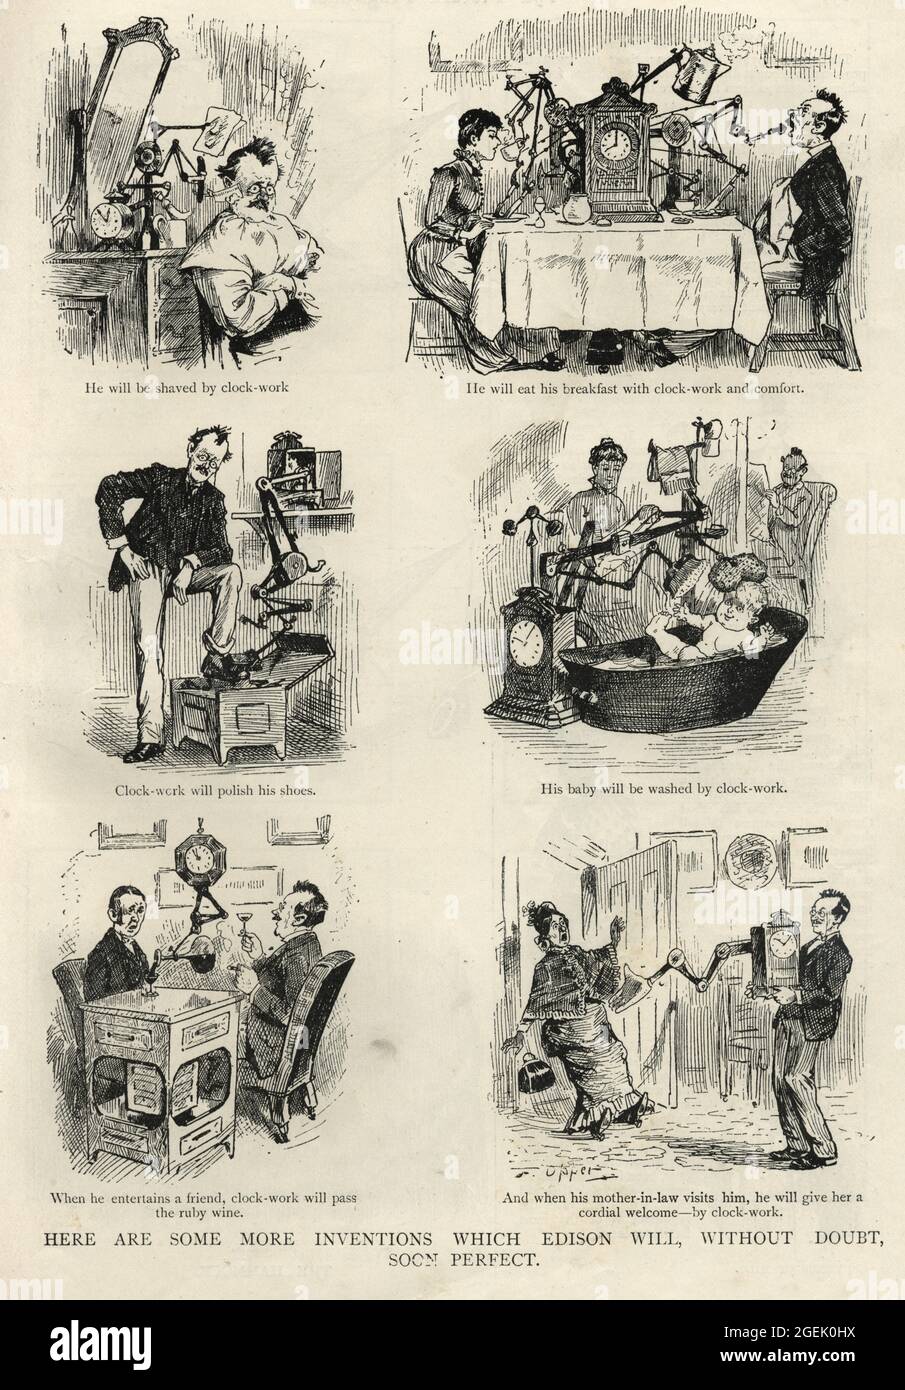 Inventos que Edison sin duda pronto perfecto, dibujos animados victorianos siglo 19th Foto de stock